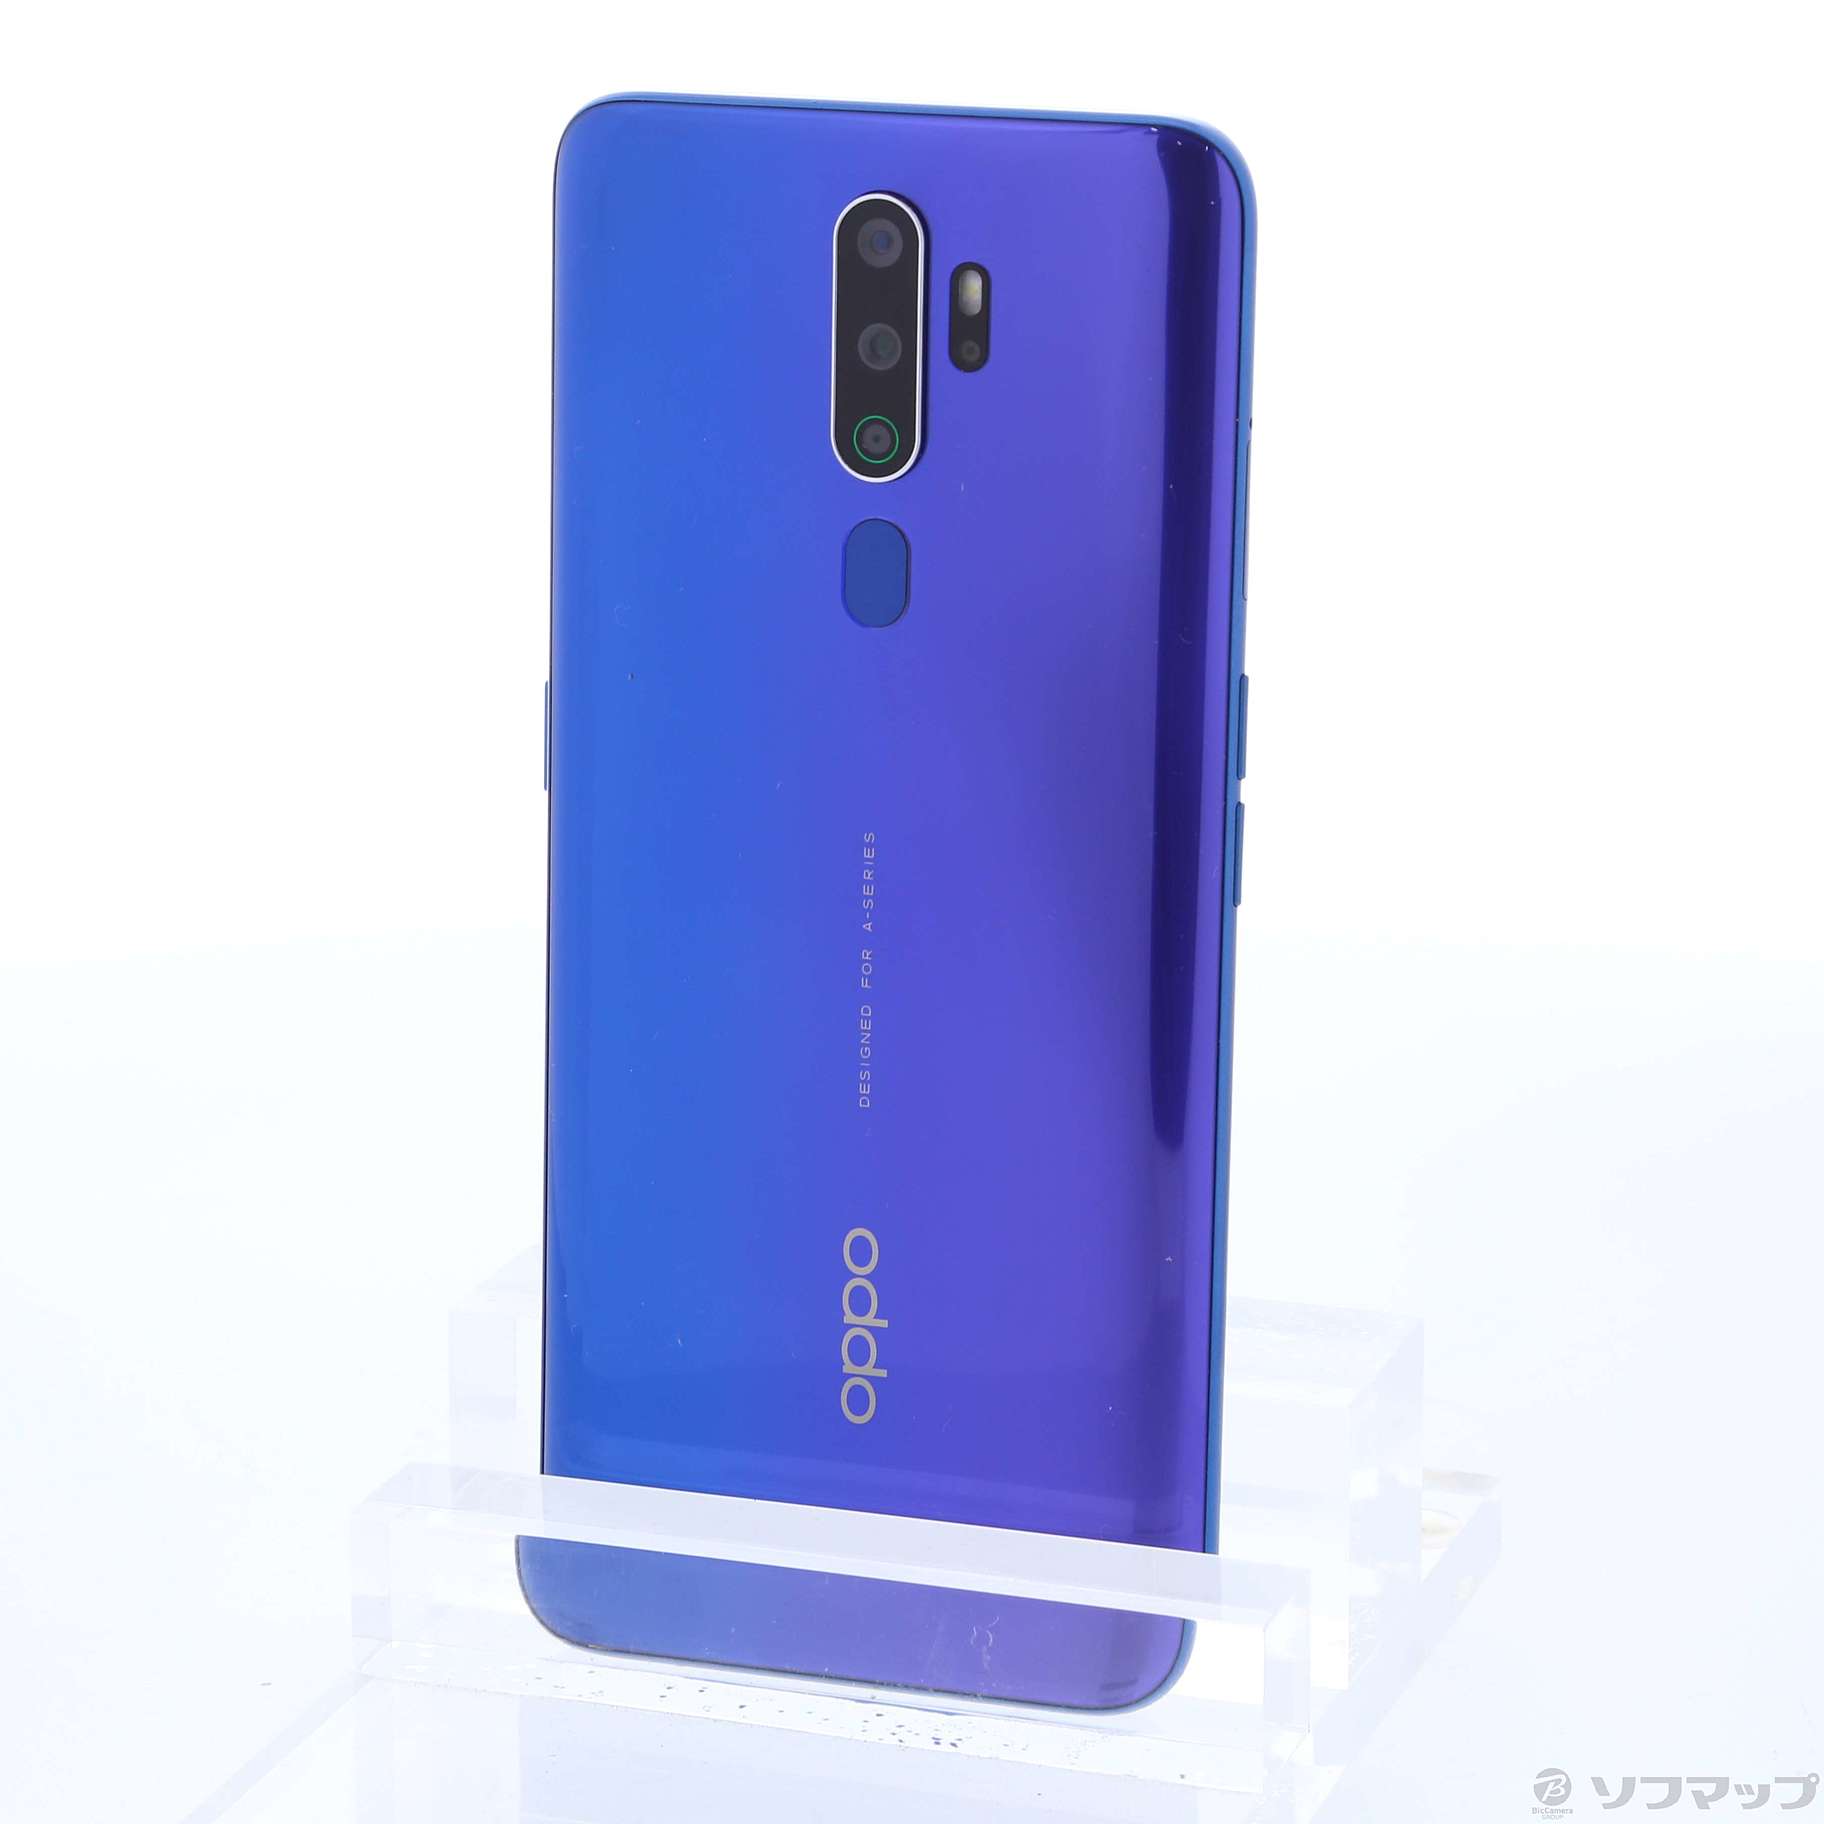 販売するOPPO reno A5 2020 ブルー スマートフォン本体